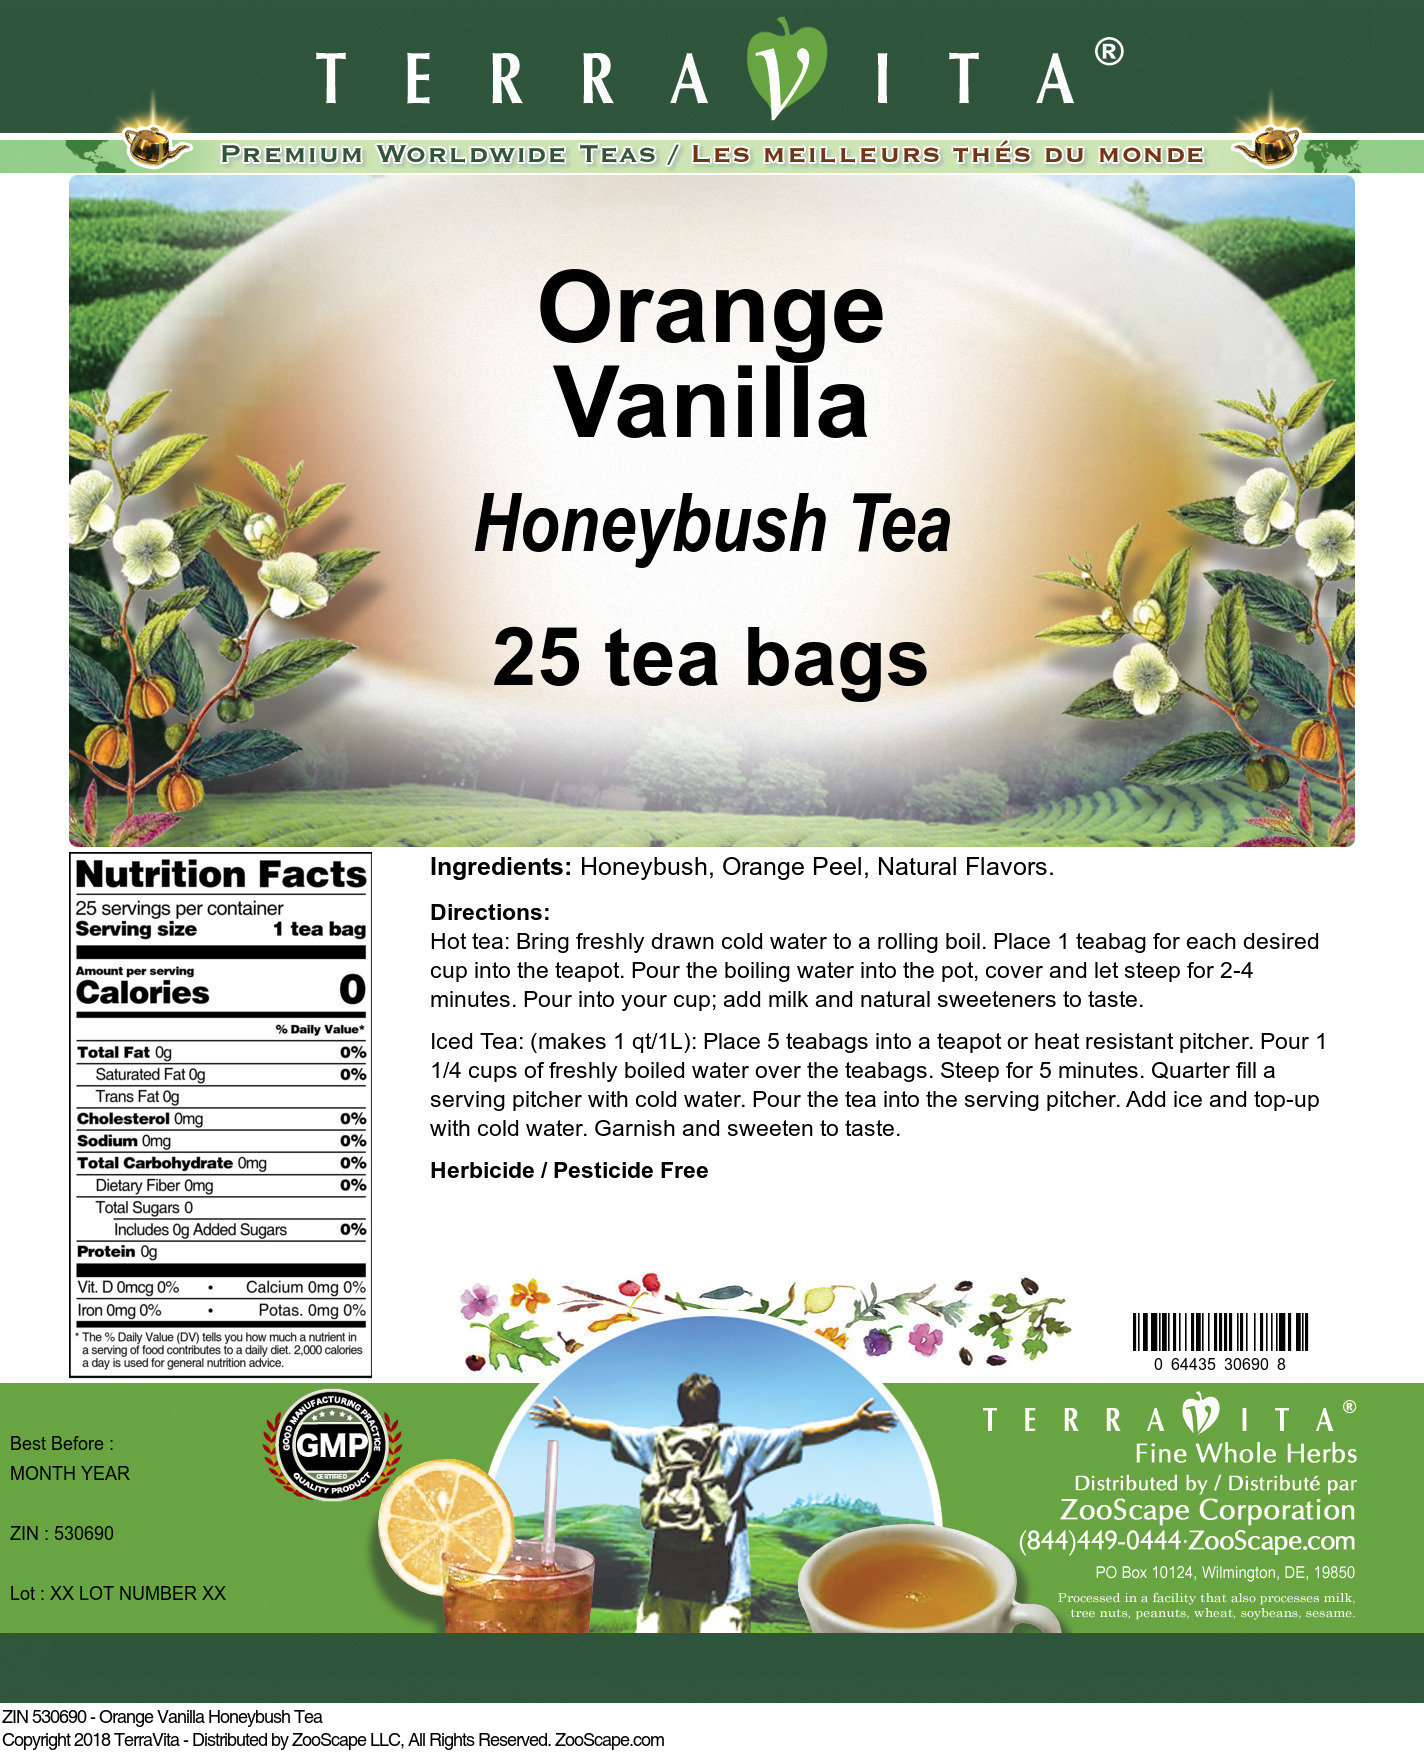 Orange Vanilla Honeybush Tea - Label